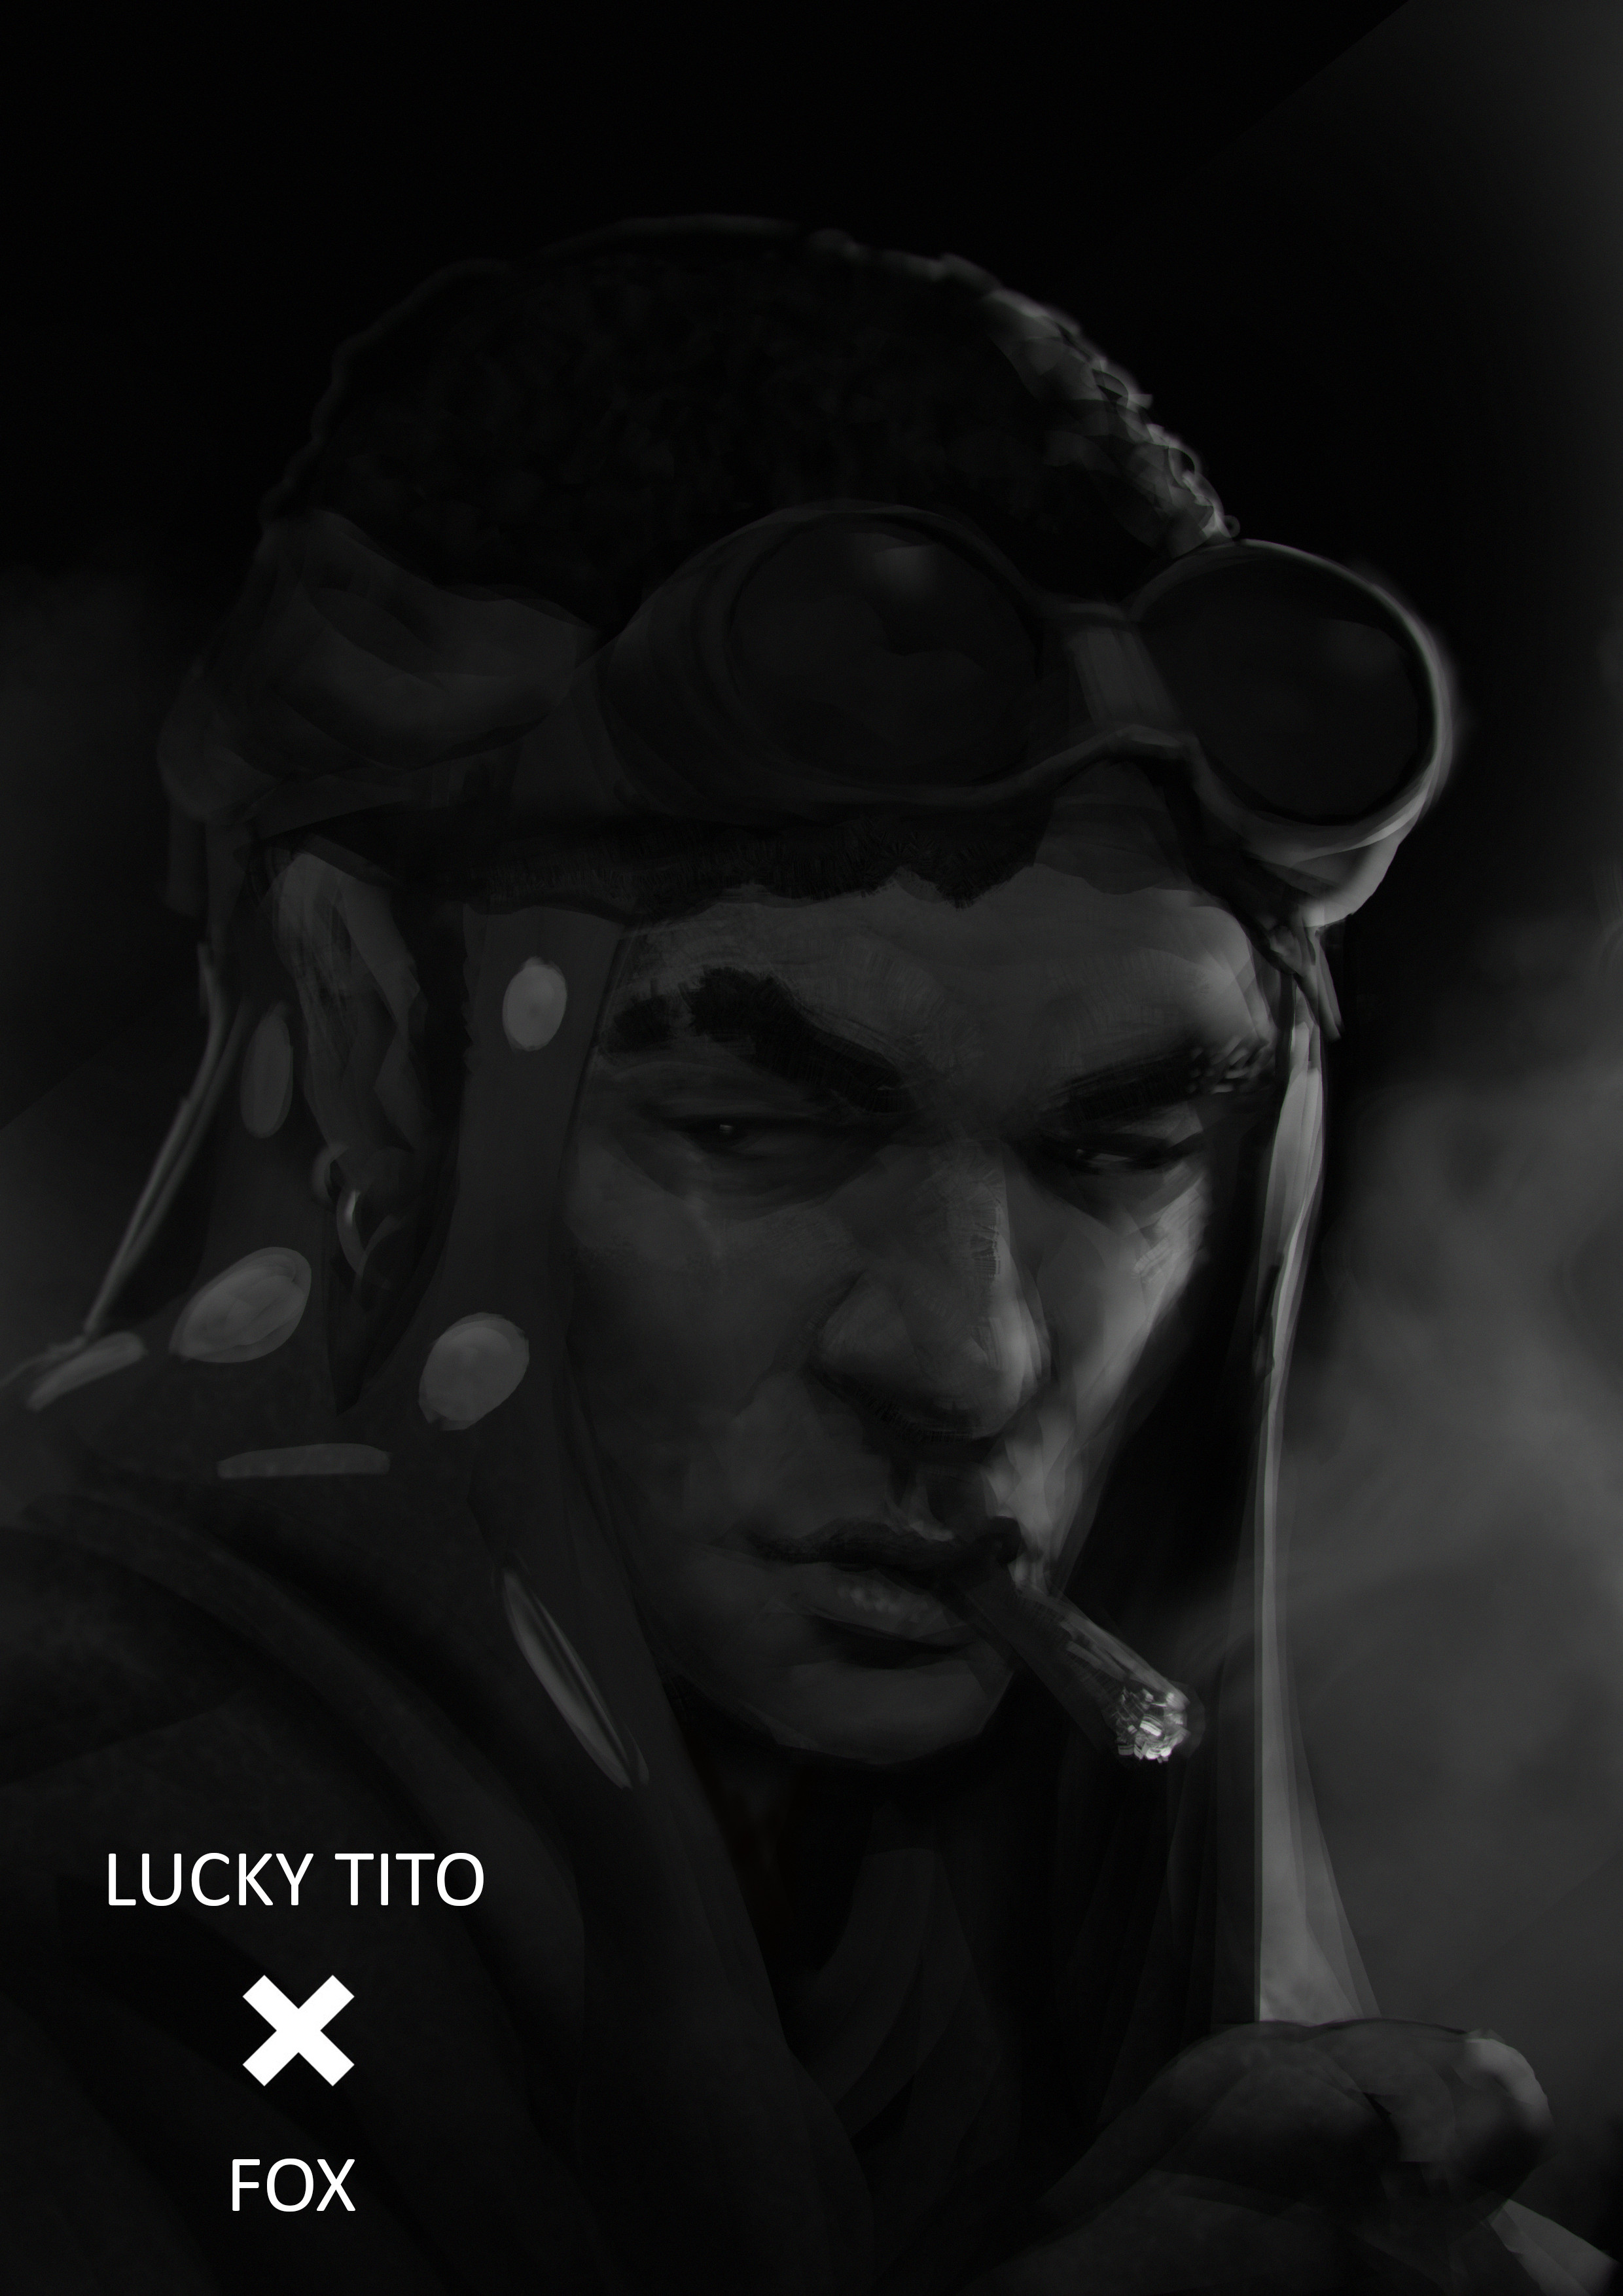 Lucky Tito, the Scrapper